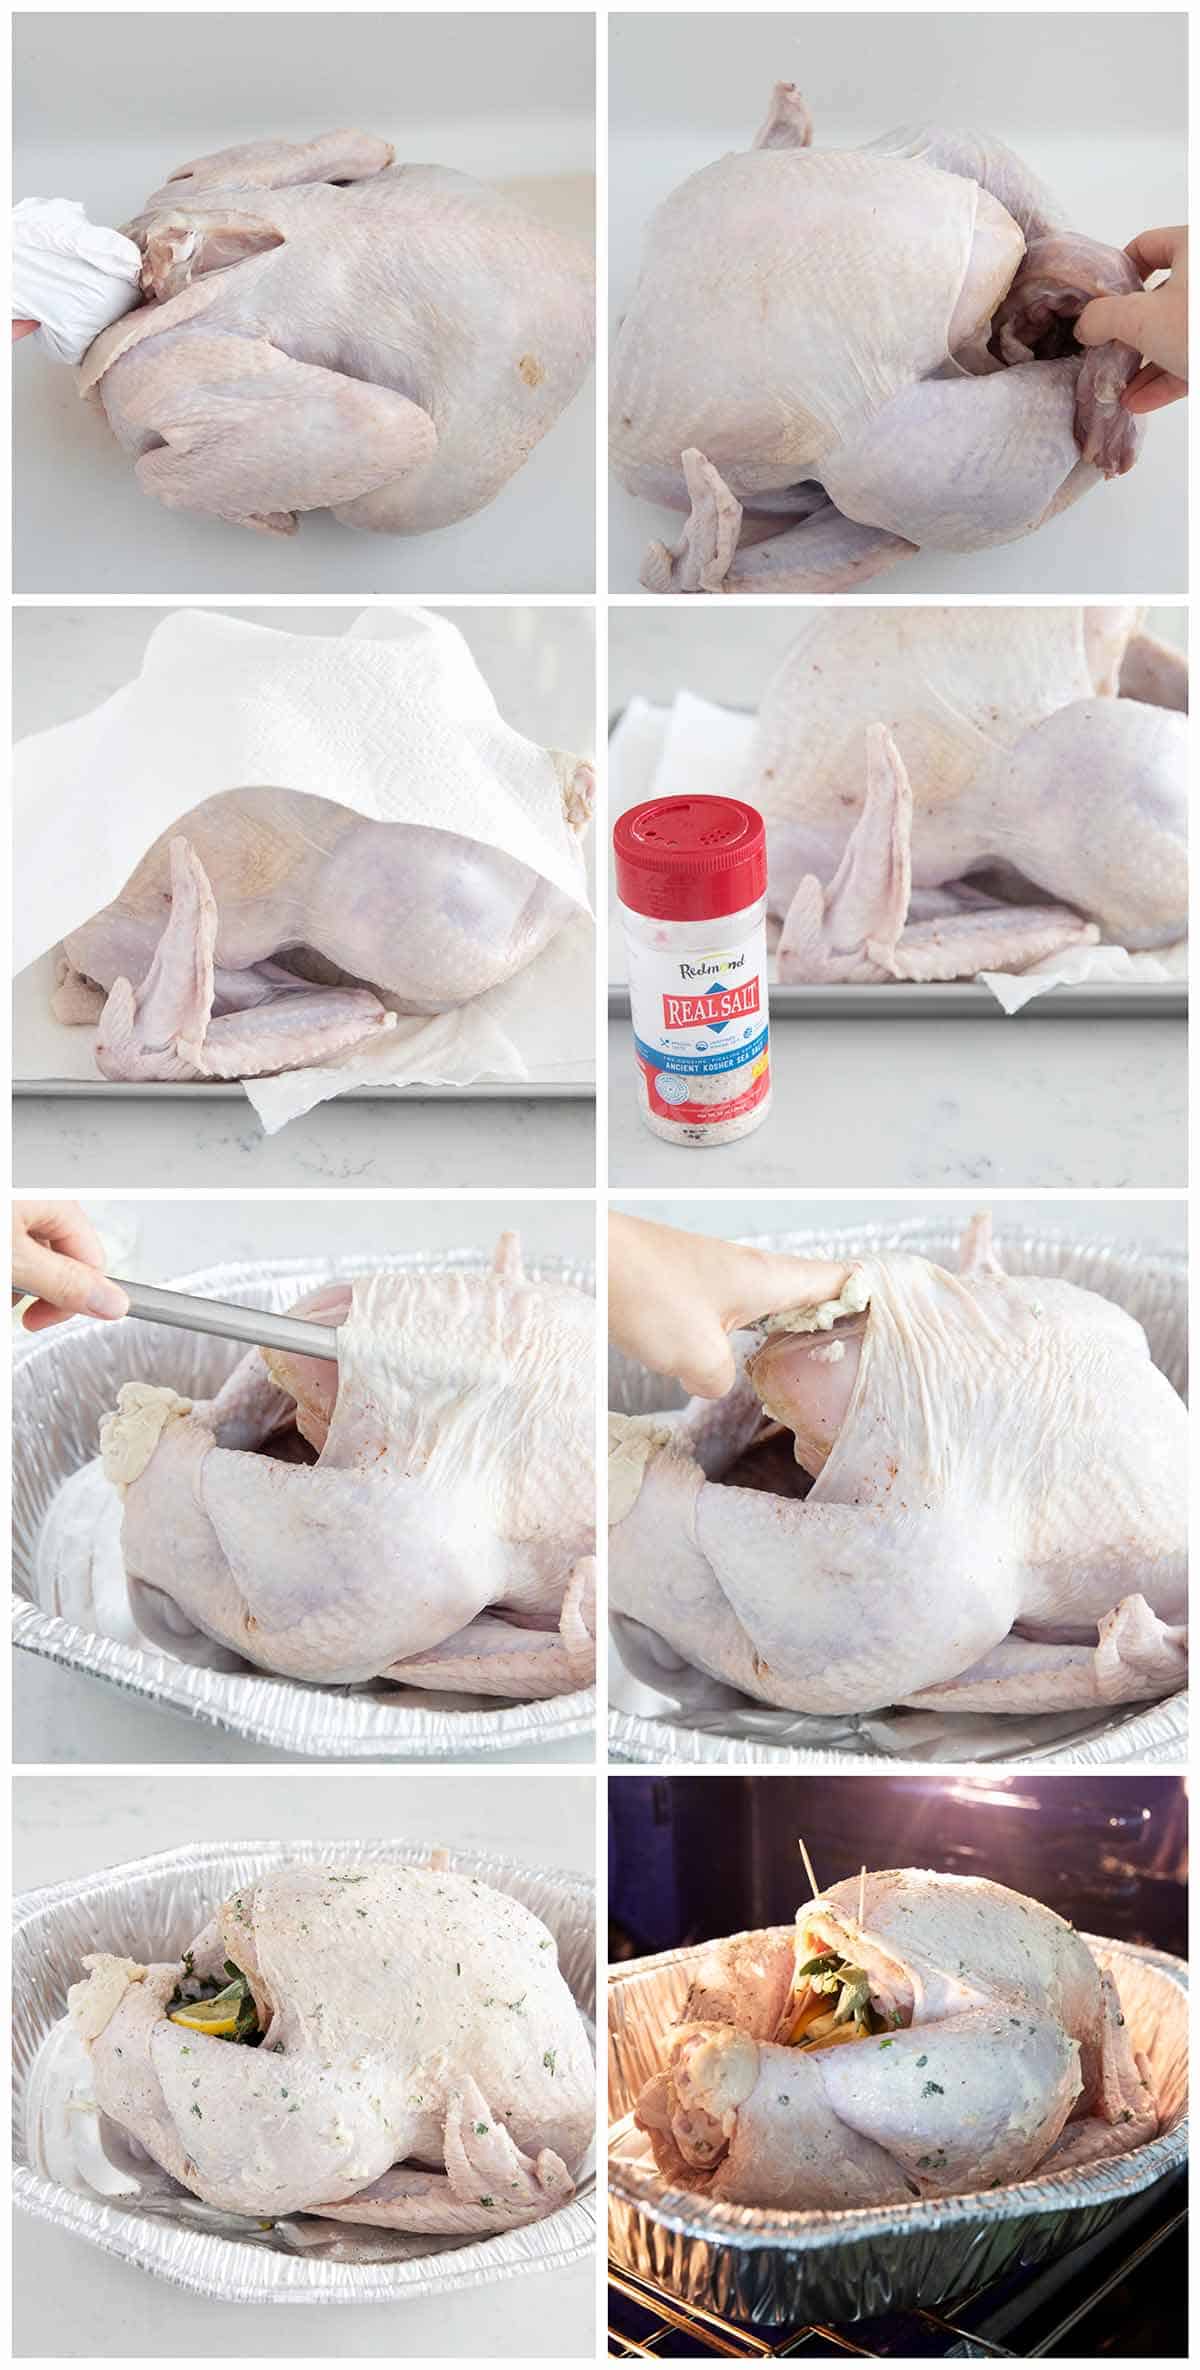 Prepping a turkey.